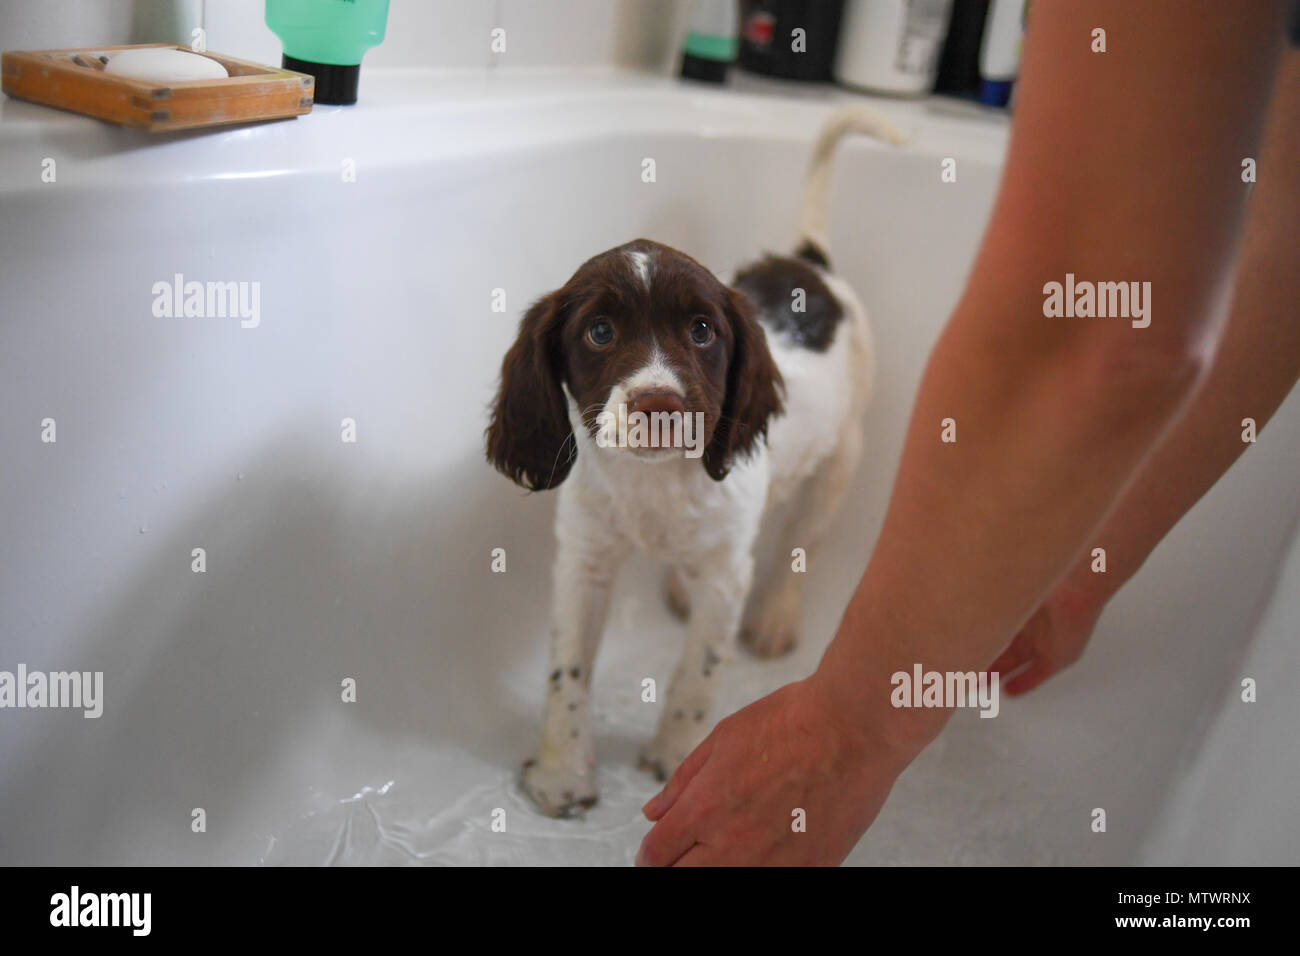 Une semaine 10 Old English springer spaniel puppy lavées dans le bain pour la première fois. Banque D'Images